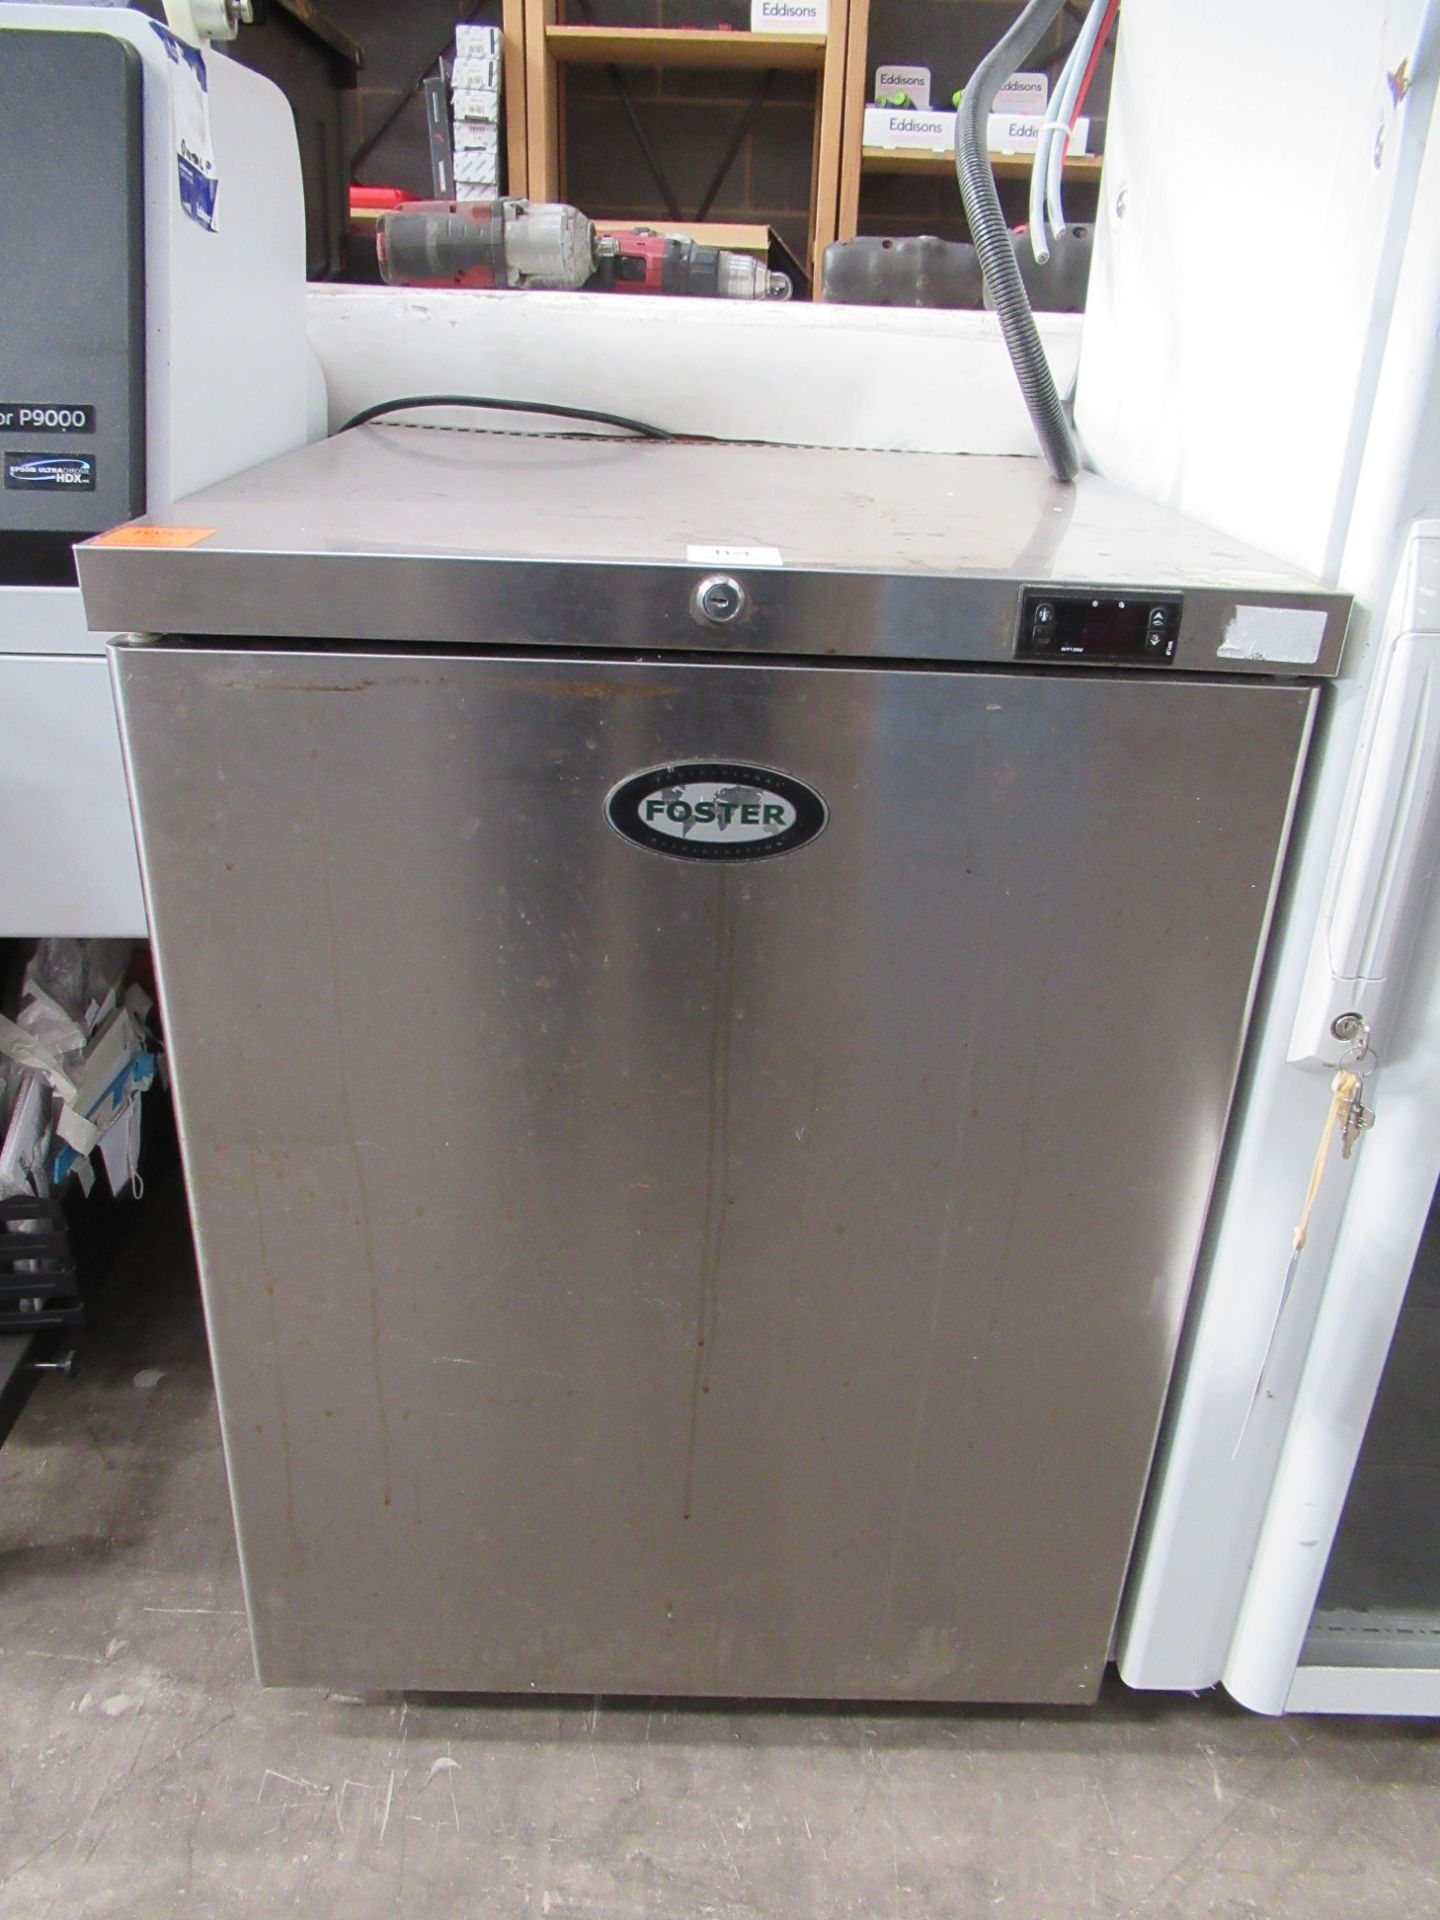 Foster HR150 Undercounter Refrigerator